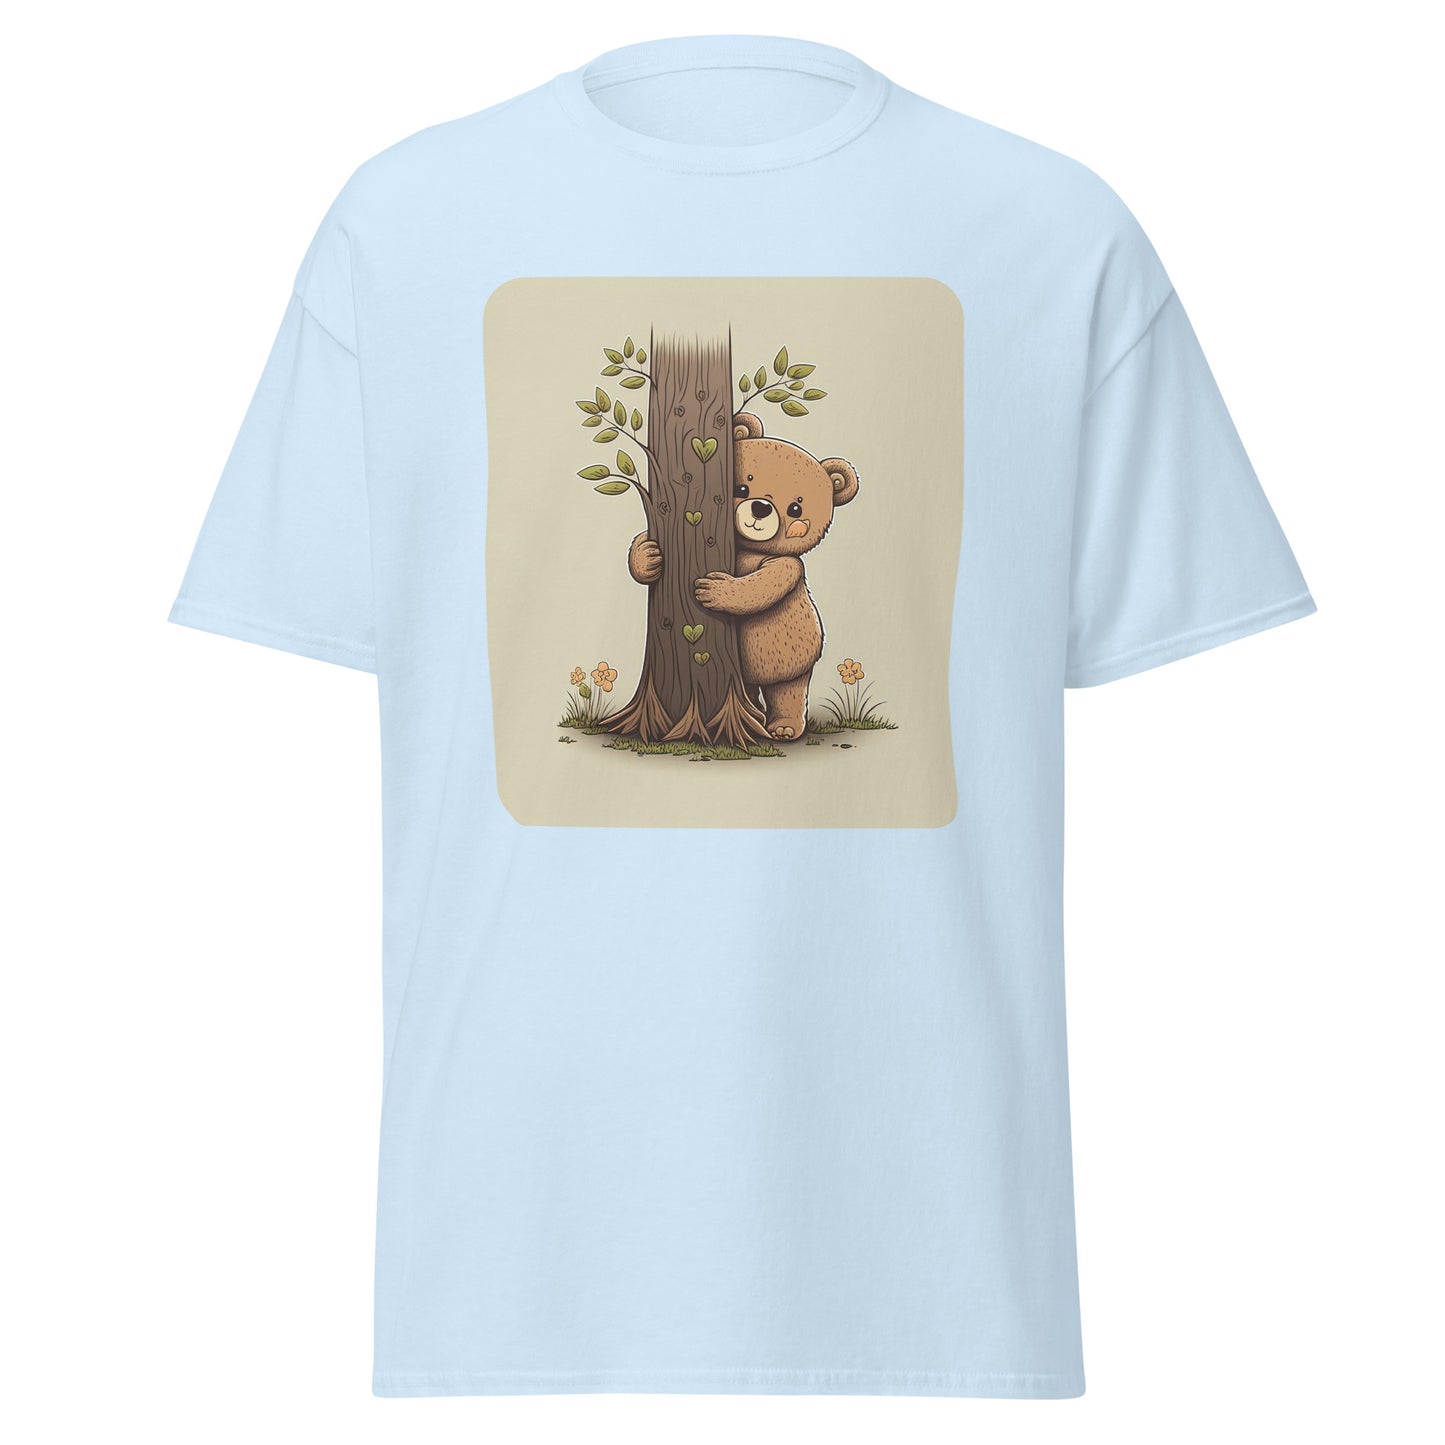 Cute Tree Hugger Teddy Bear T-Shirt